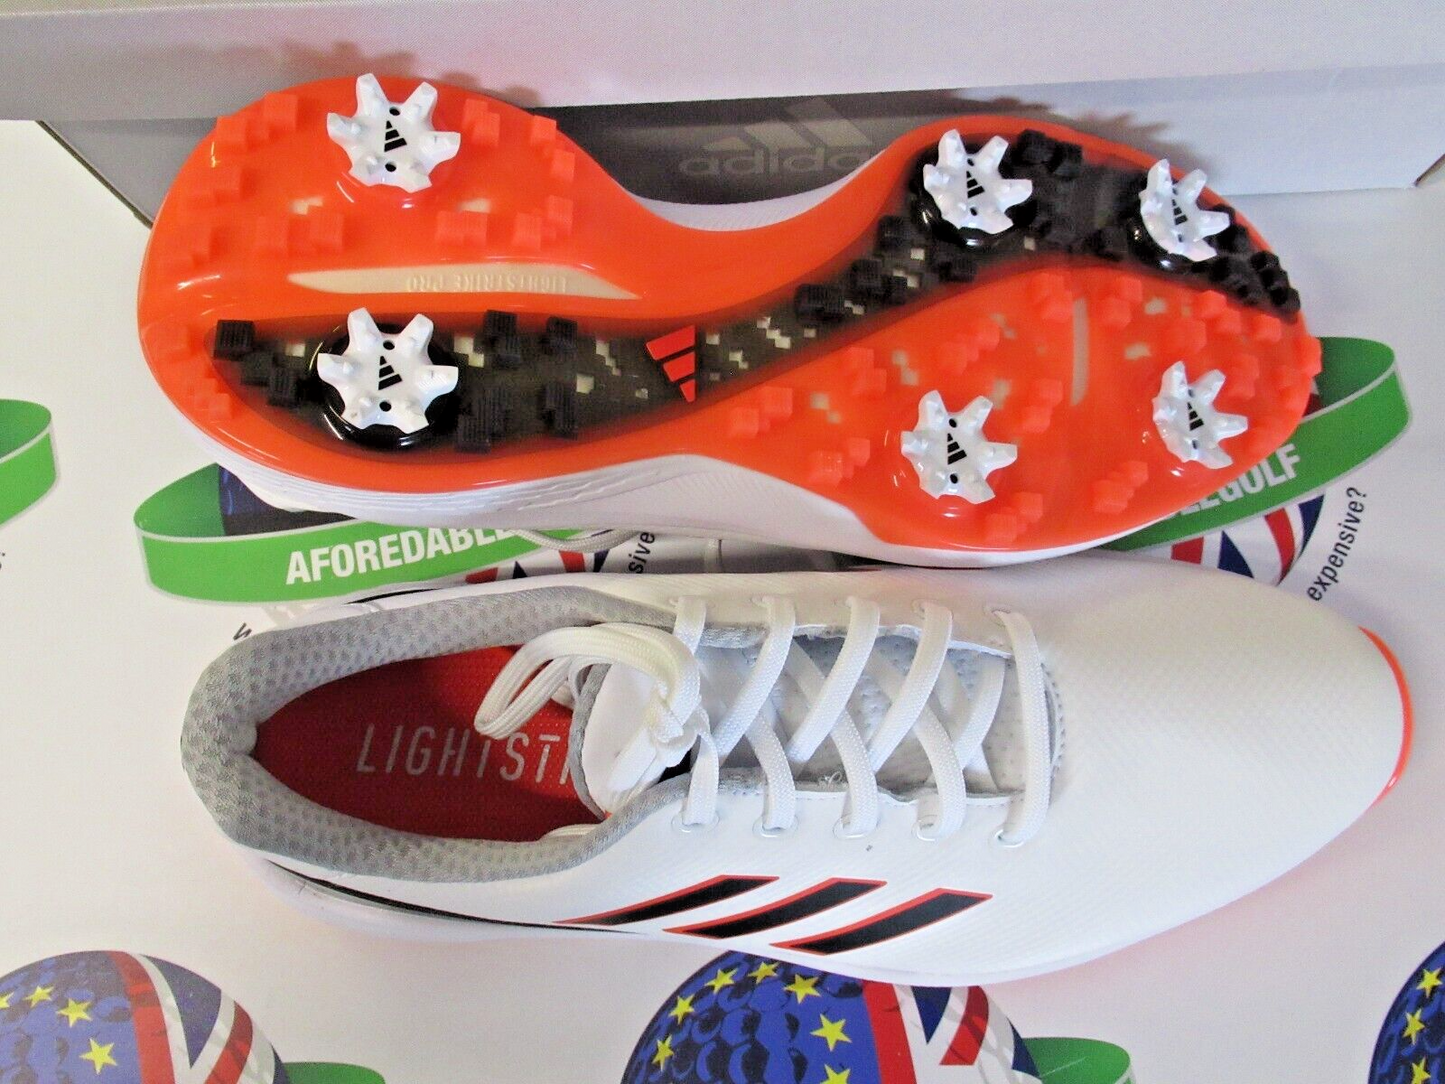 adidas zg23 waterproof golf shoes white/orange uk size 10.5